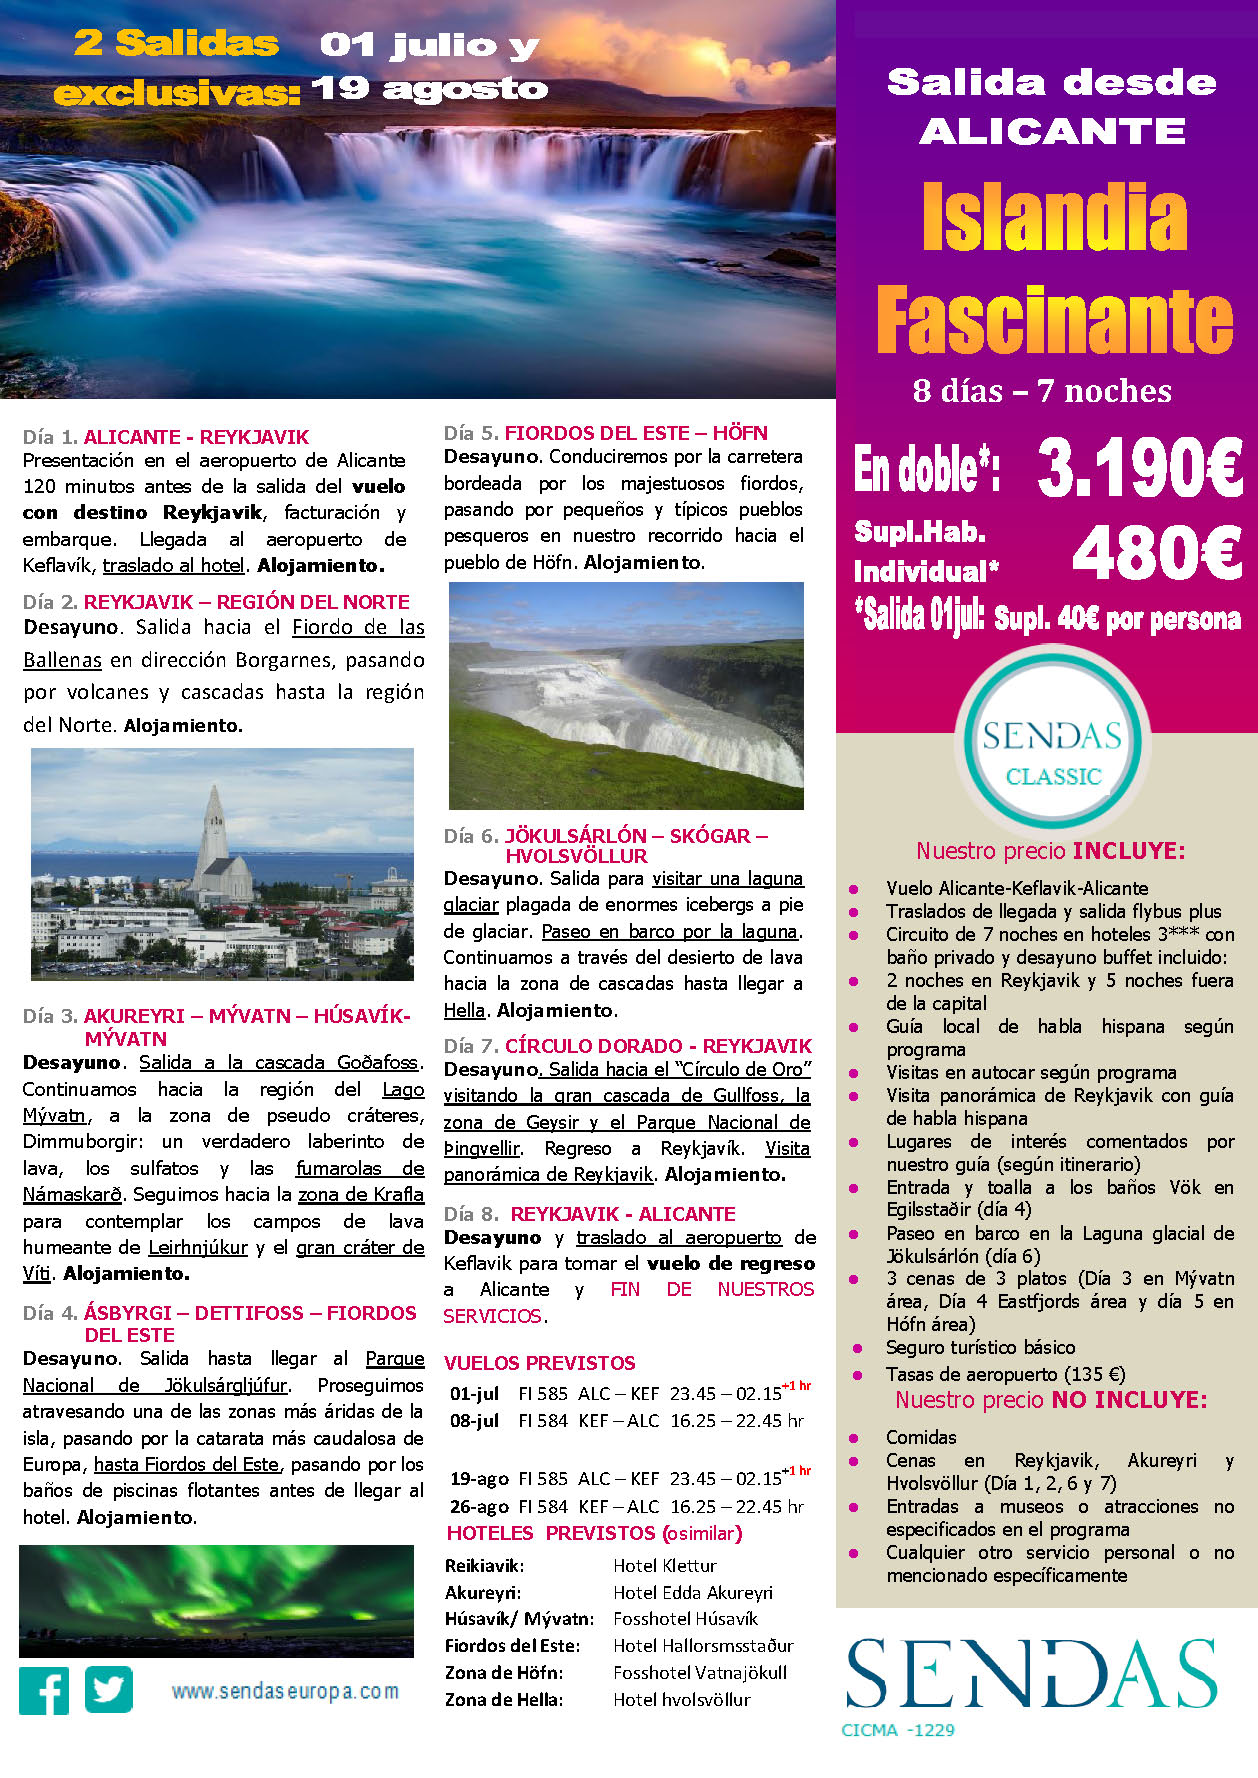 Oferta Sendas Julio y Agosto 2023 Circuito Islandia Fascinante 8 dias salida en vuelo directo desde Alicante